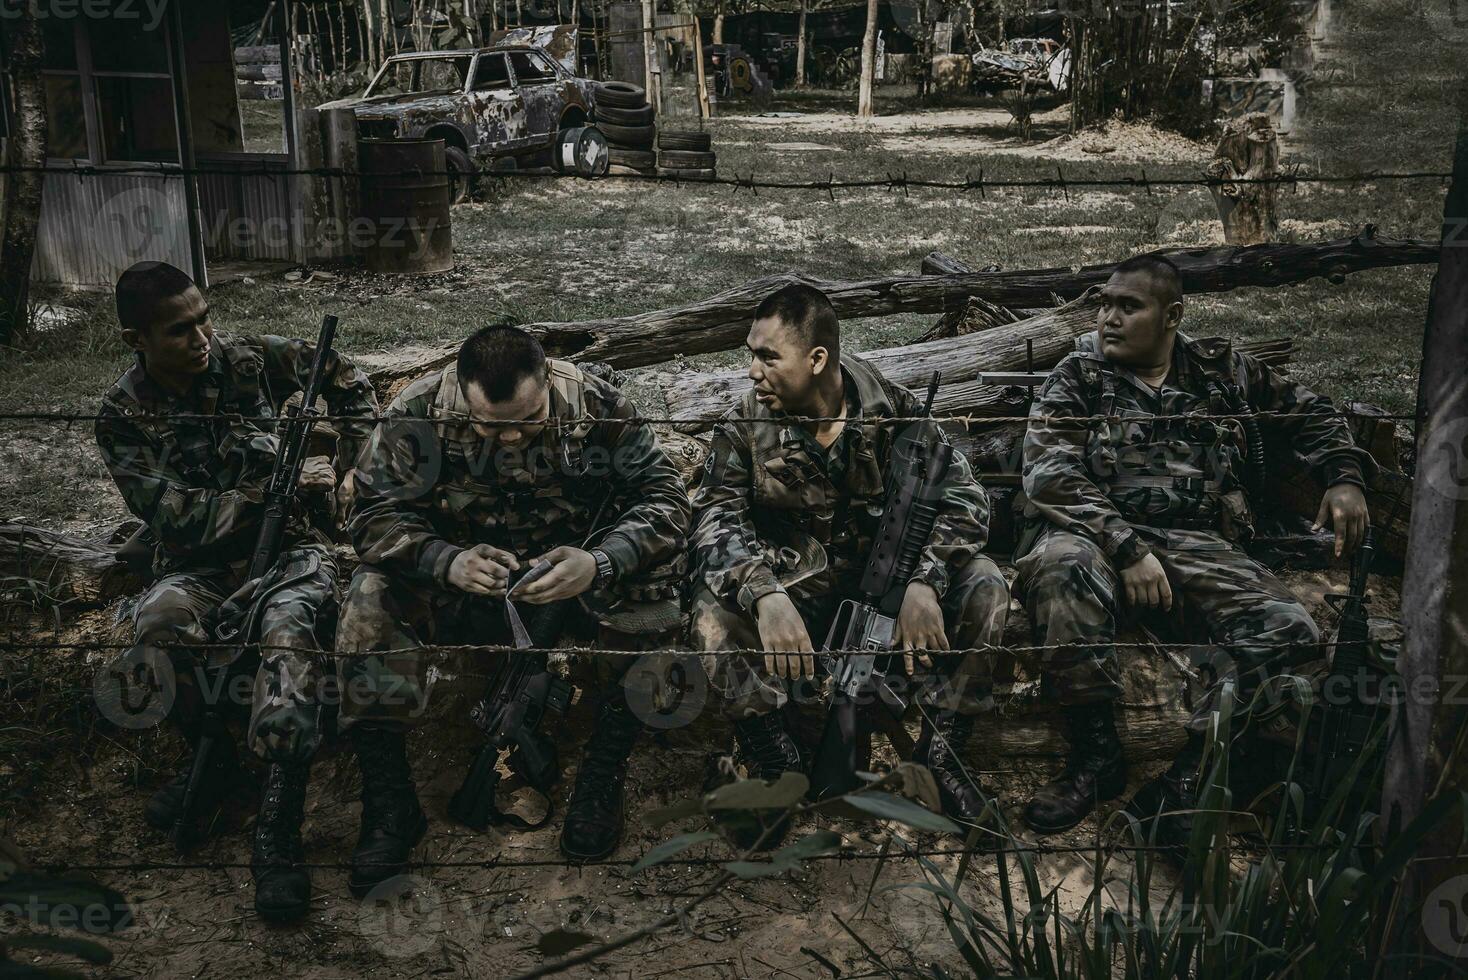 équipe de soldat de l'armée avec mitrailleuse se déplaçant dans la forêt, soldat de la milice thaïlandaise en uniforme de combat dans le bois, errer la patrouille en pente dans la forêt tropicale. photo